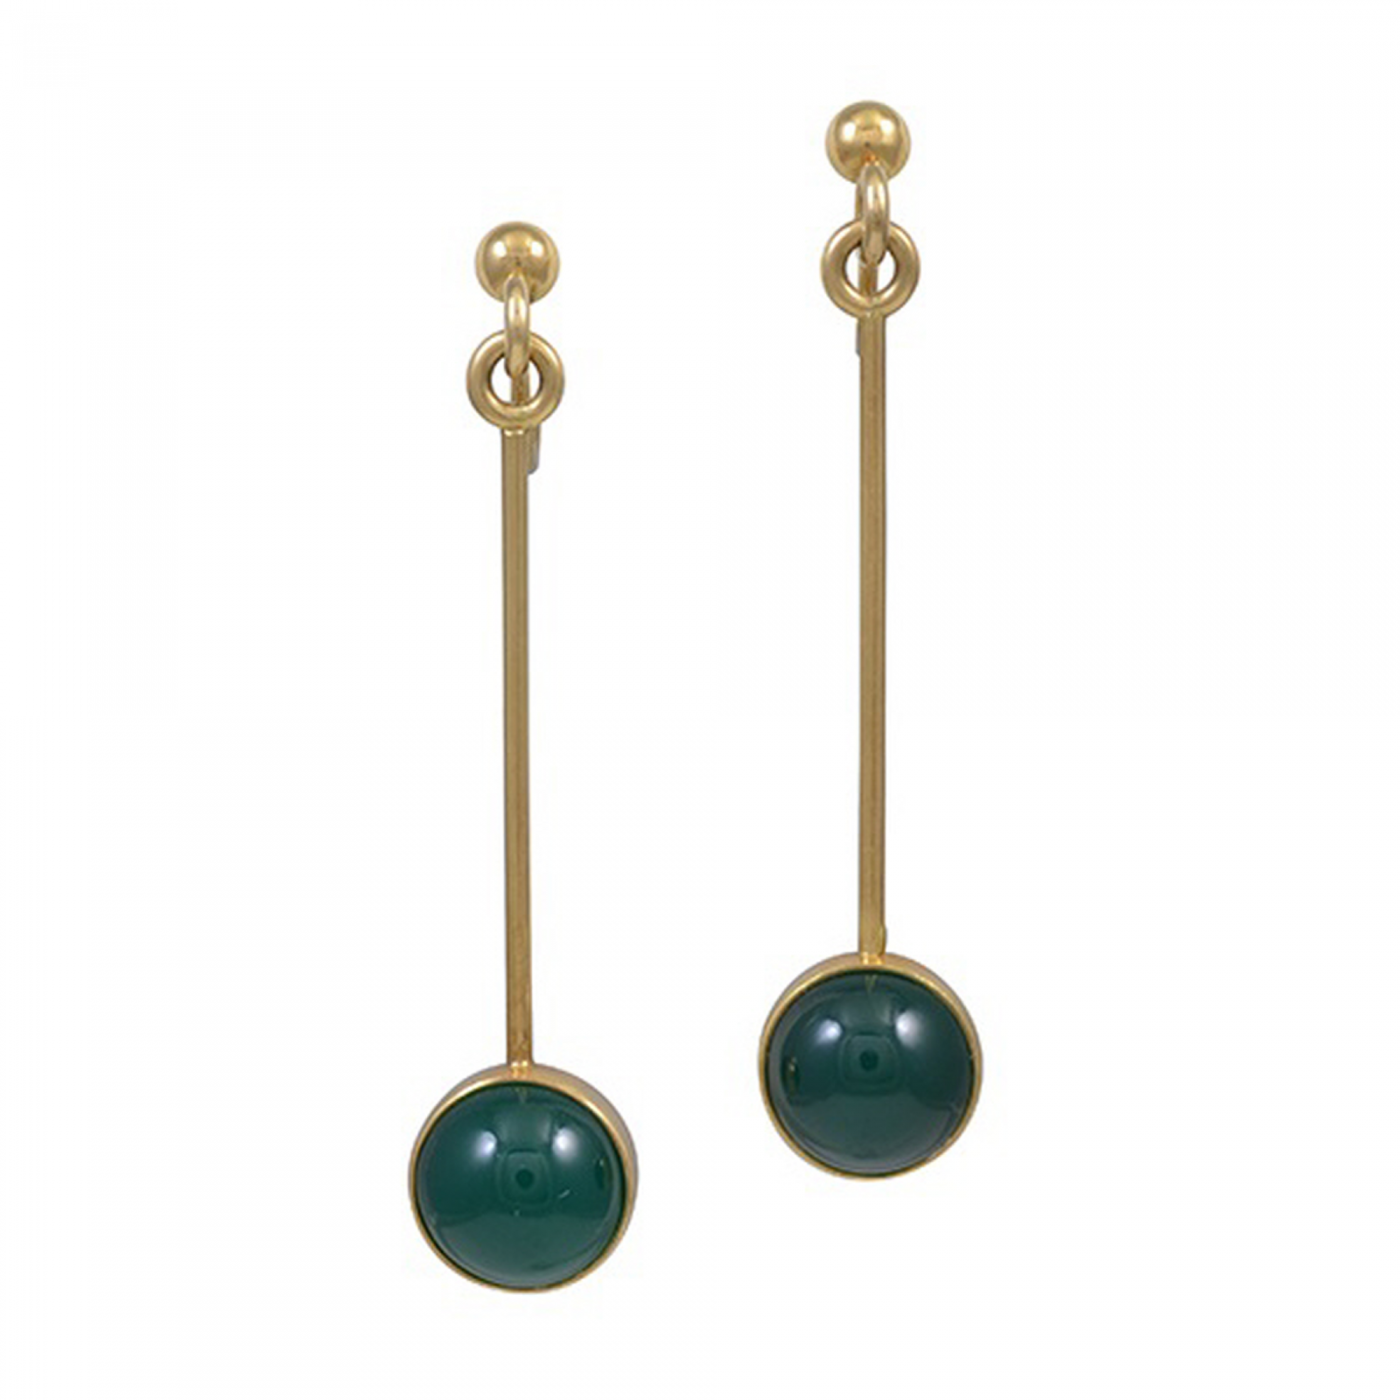 Magnus Stephensen - Georg Jensen 18kt Gold Earrings with Green Agate, M ...